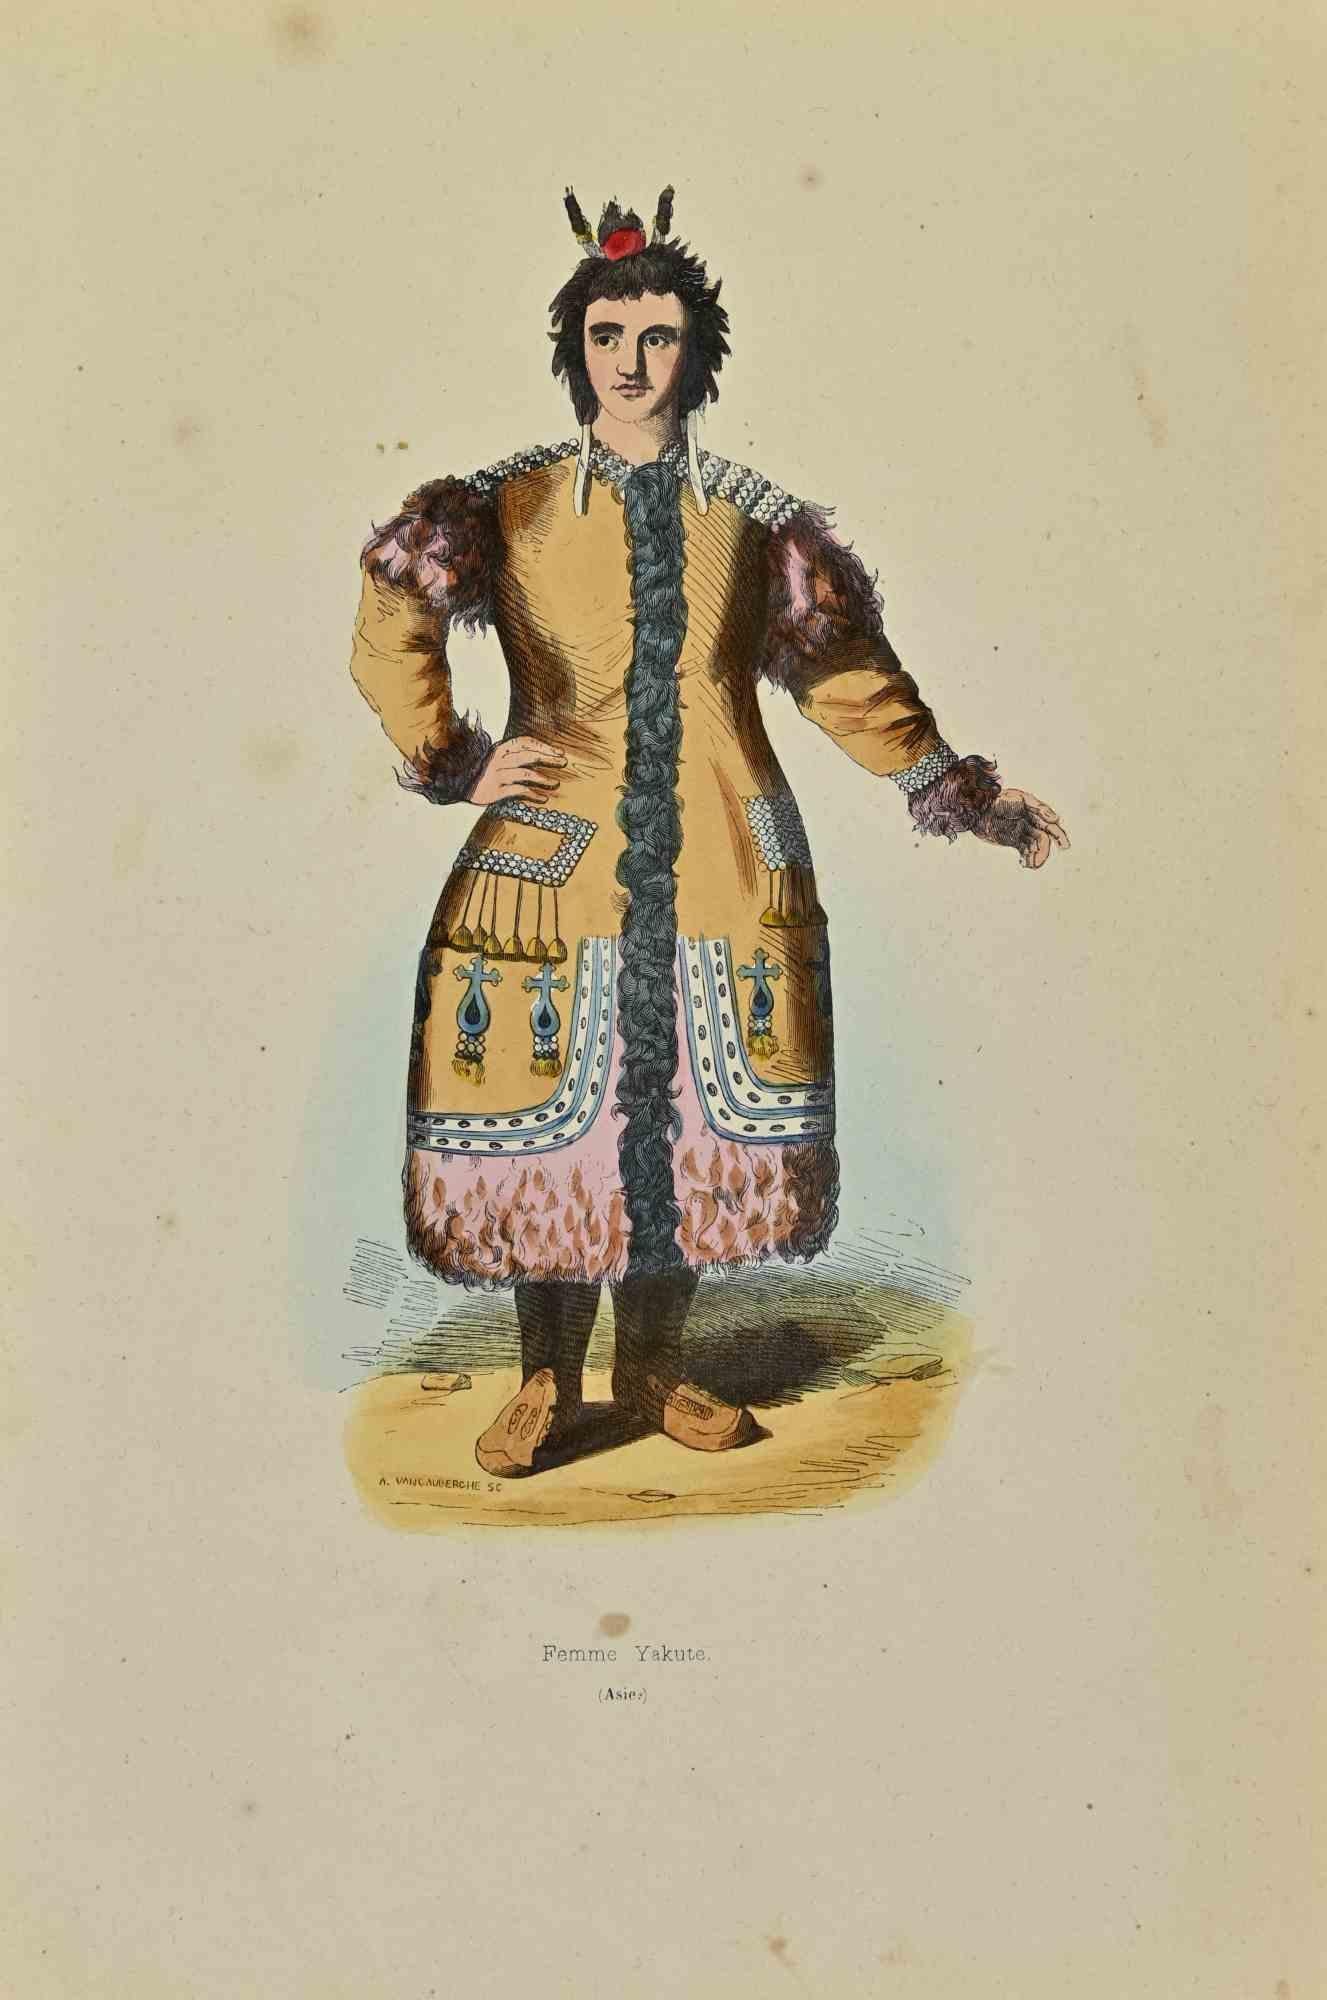 Yakut Woman ist eine Lithografie von Auguste Wahlen aus dem Jahr 1844.

Handgefärbt.

Guter Zustand.

Im Zentrum des Kunstwerks steht der Originaltitel "Femme Yakute".

Das Werk ist Teil der Suite Moeurs, usages et costumes de tous les peuples du